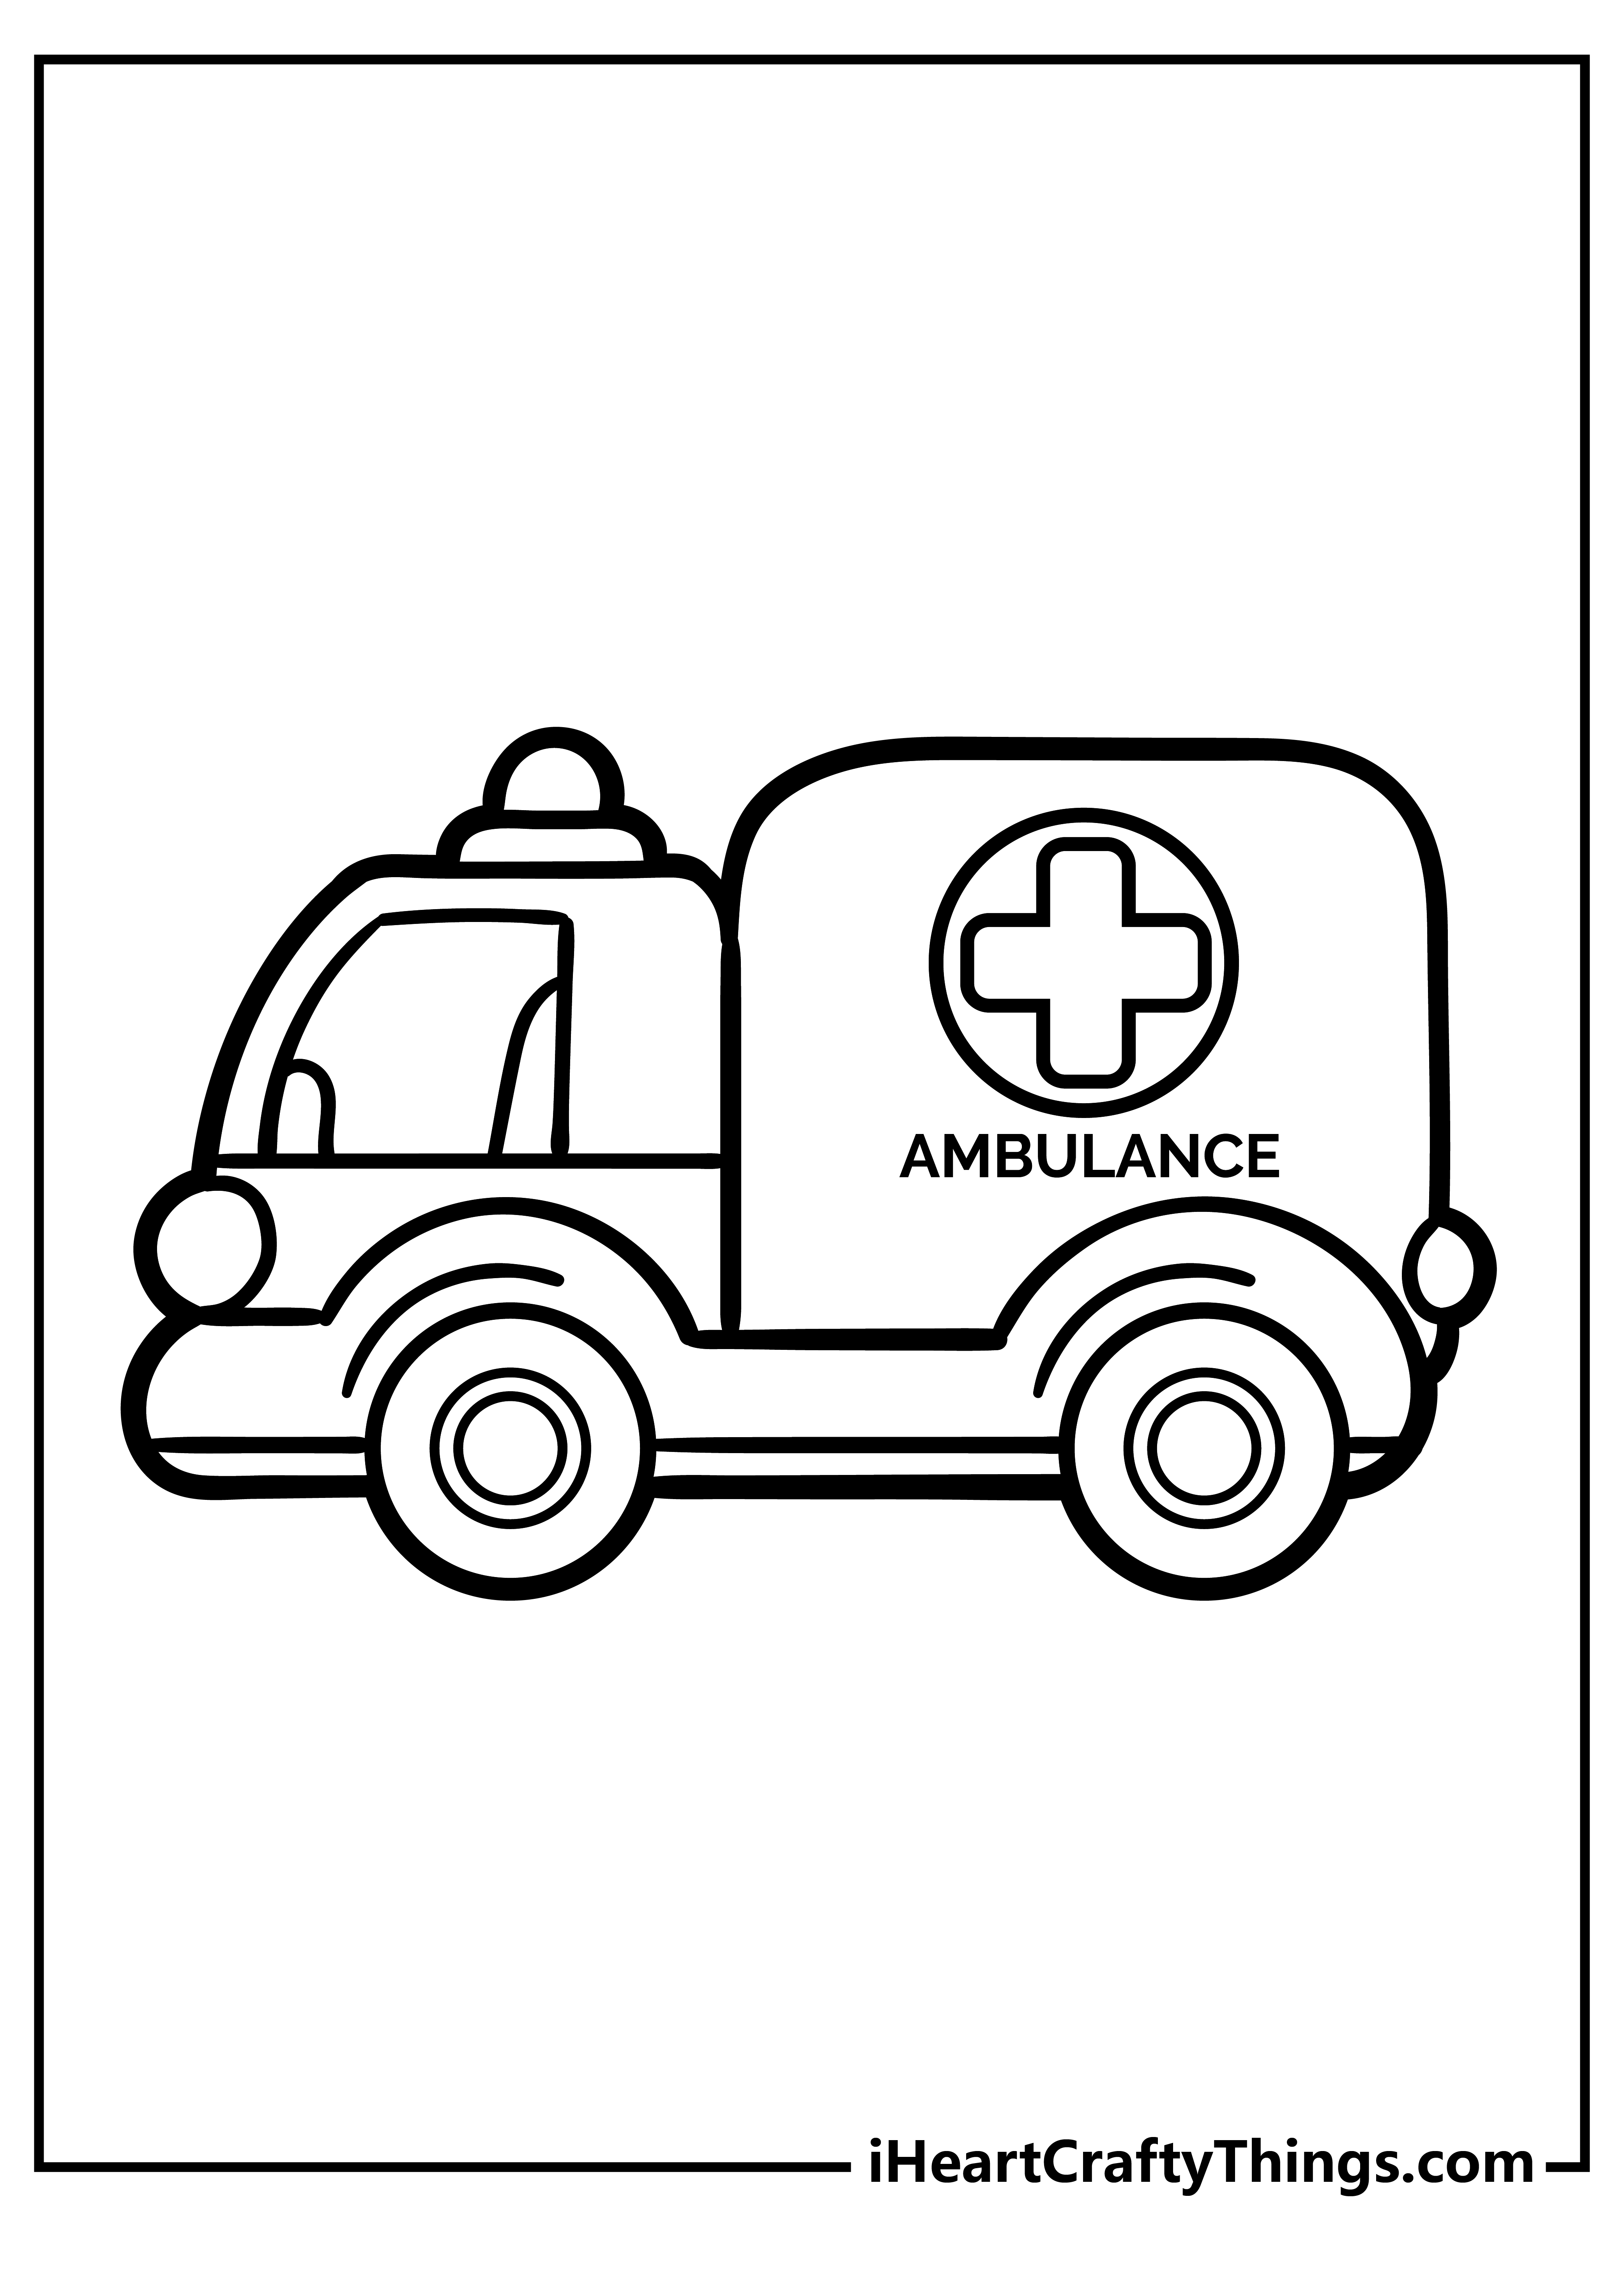 Ambulance Drawing Creative Style